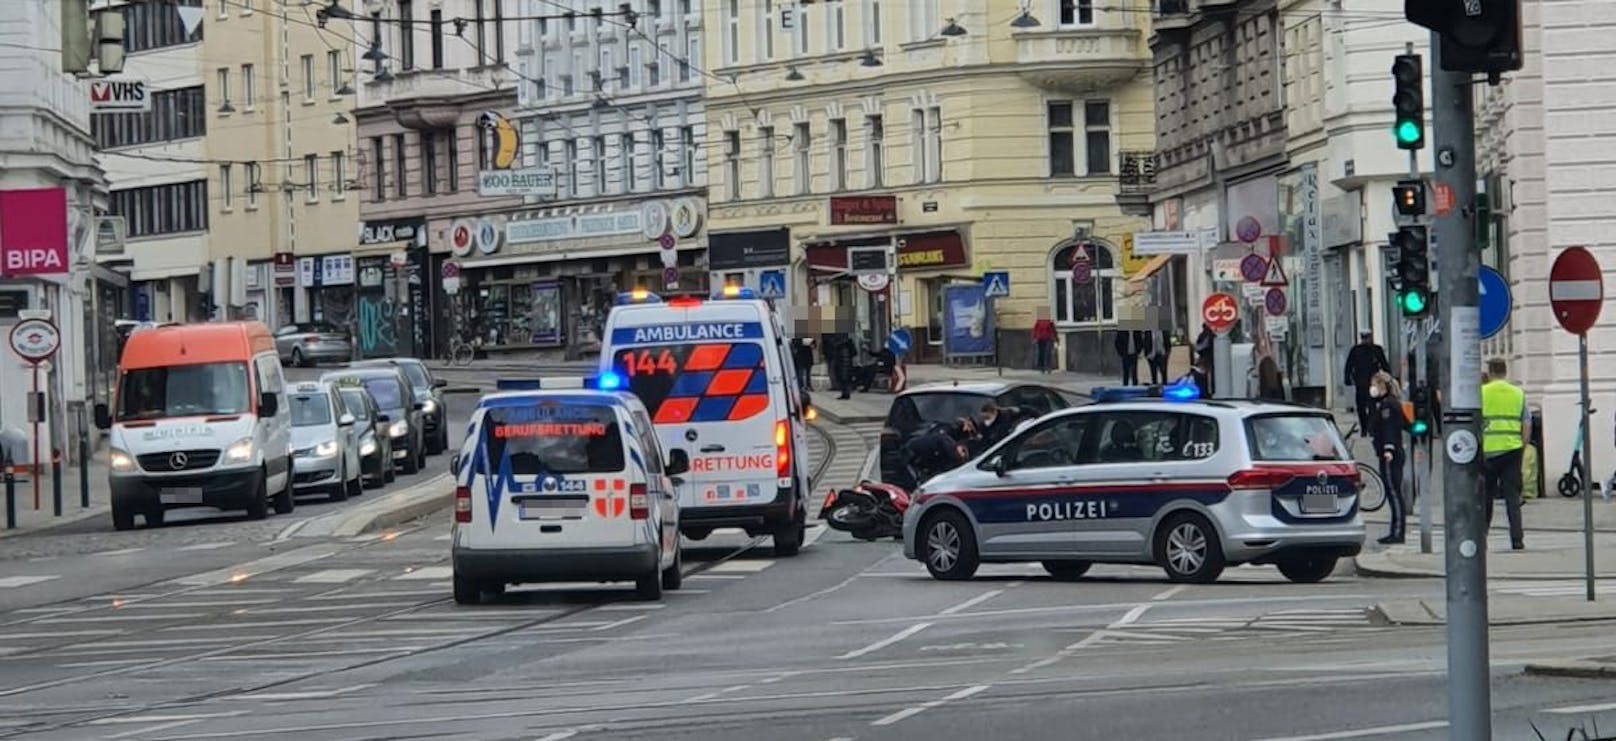 Die Rettung und die Polizei Wien waren vor Ort.